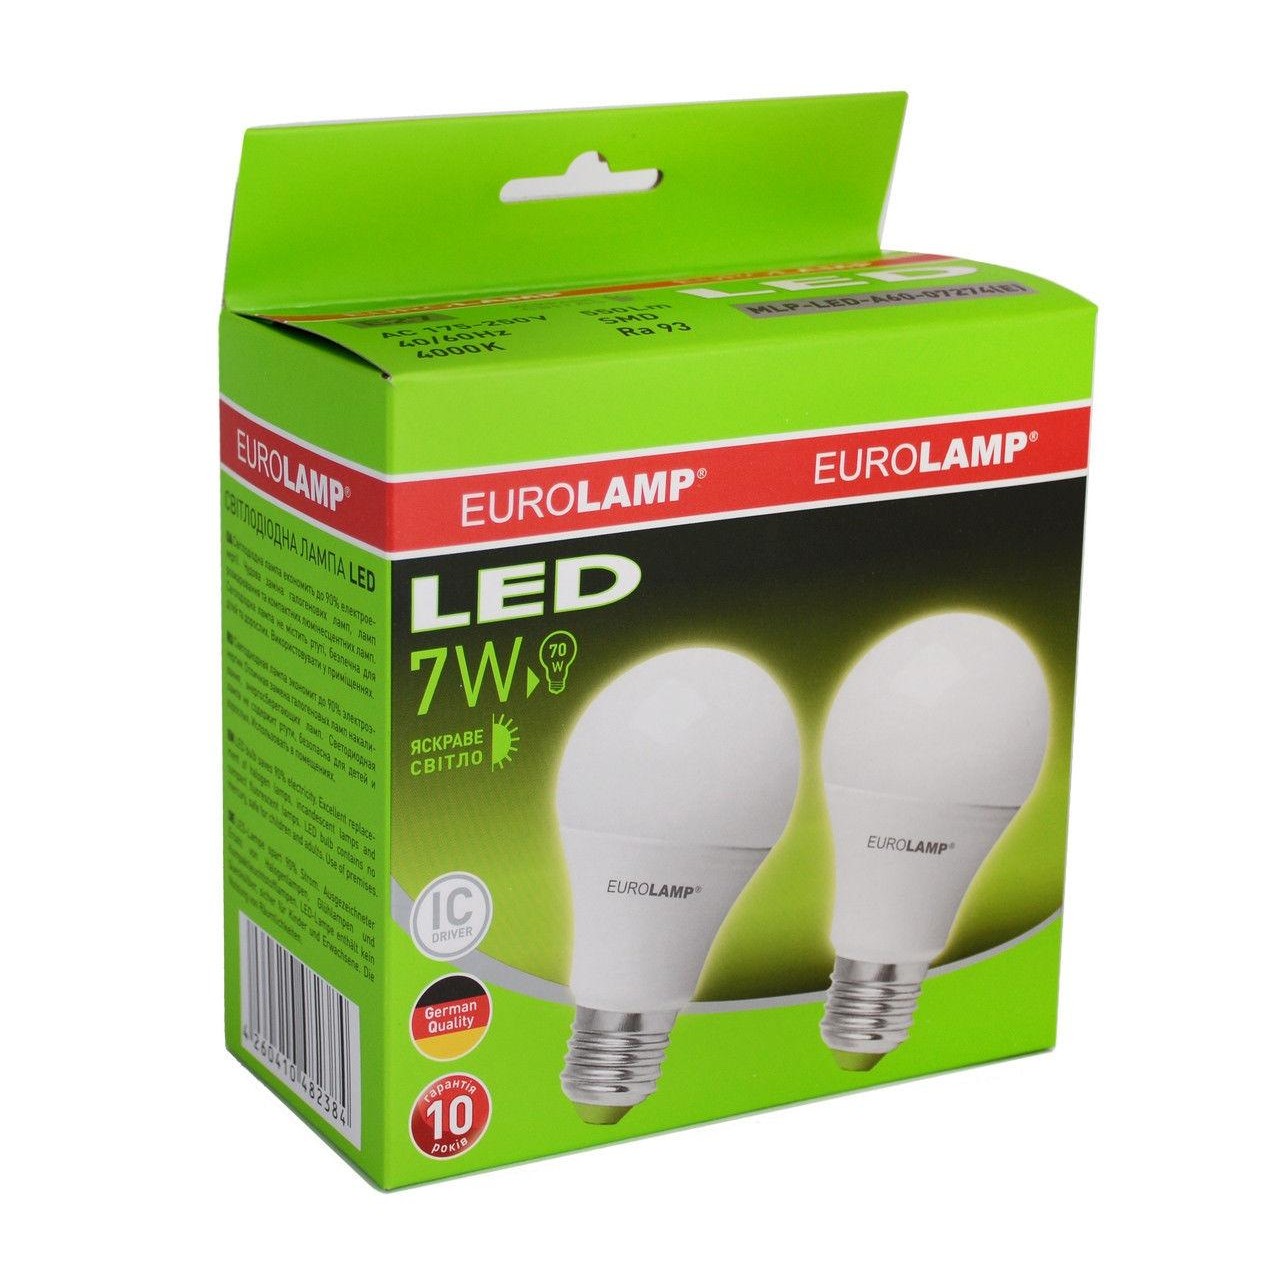 EUROLAMP LED ЕКО серия Е A60 7W E27 3000K набор 2 шт (MLP-LED-A60-07272(E)) - зображення 1